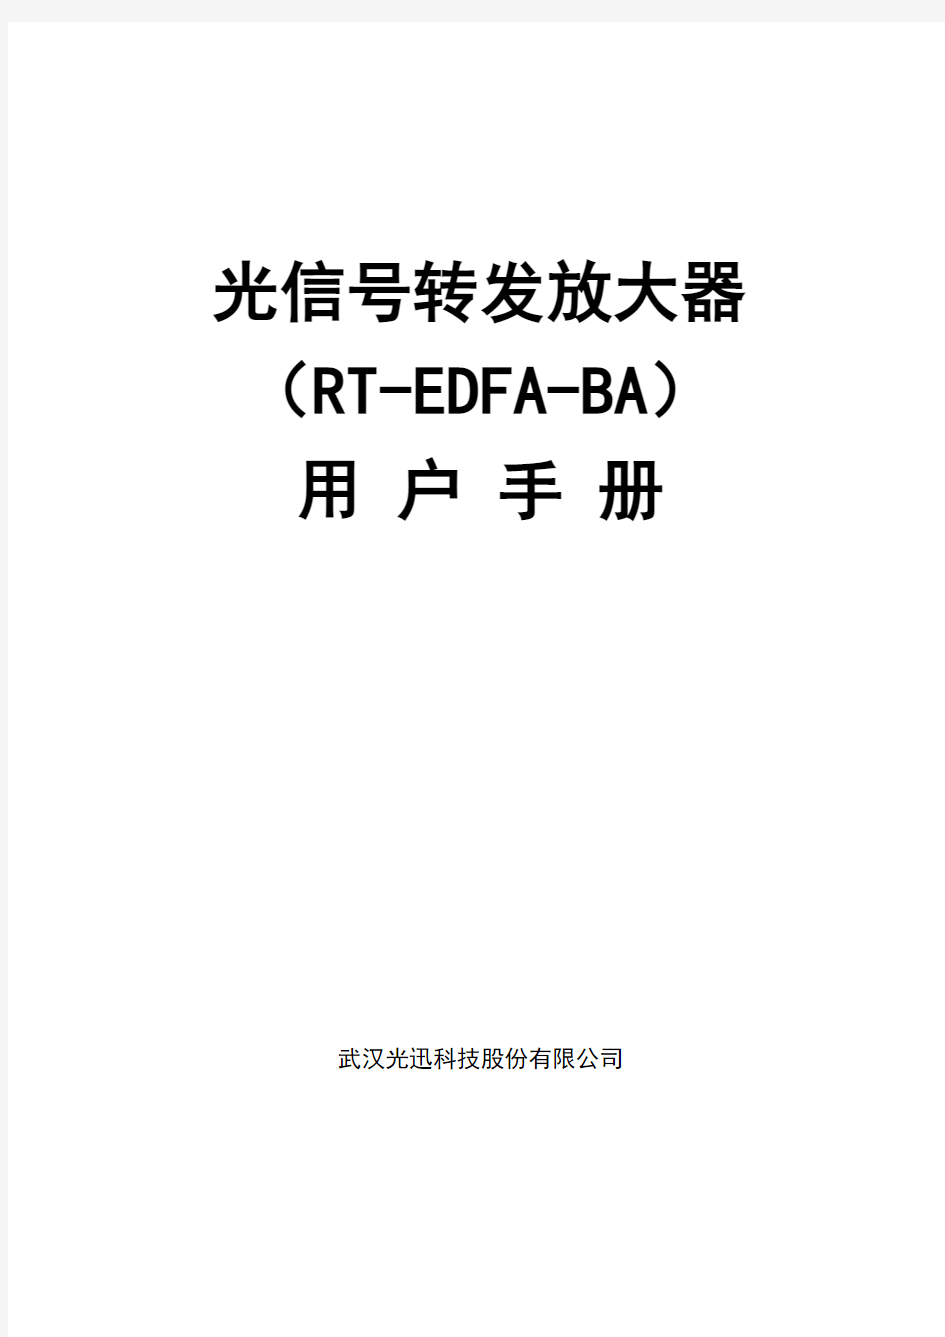 RT-EDFA-BA产品手册